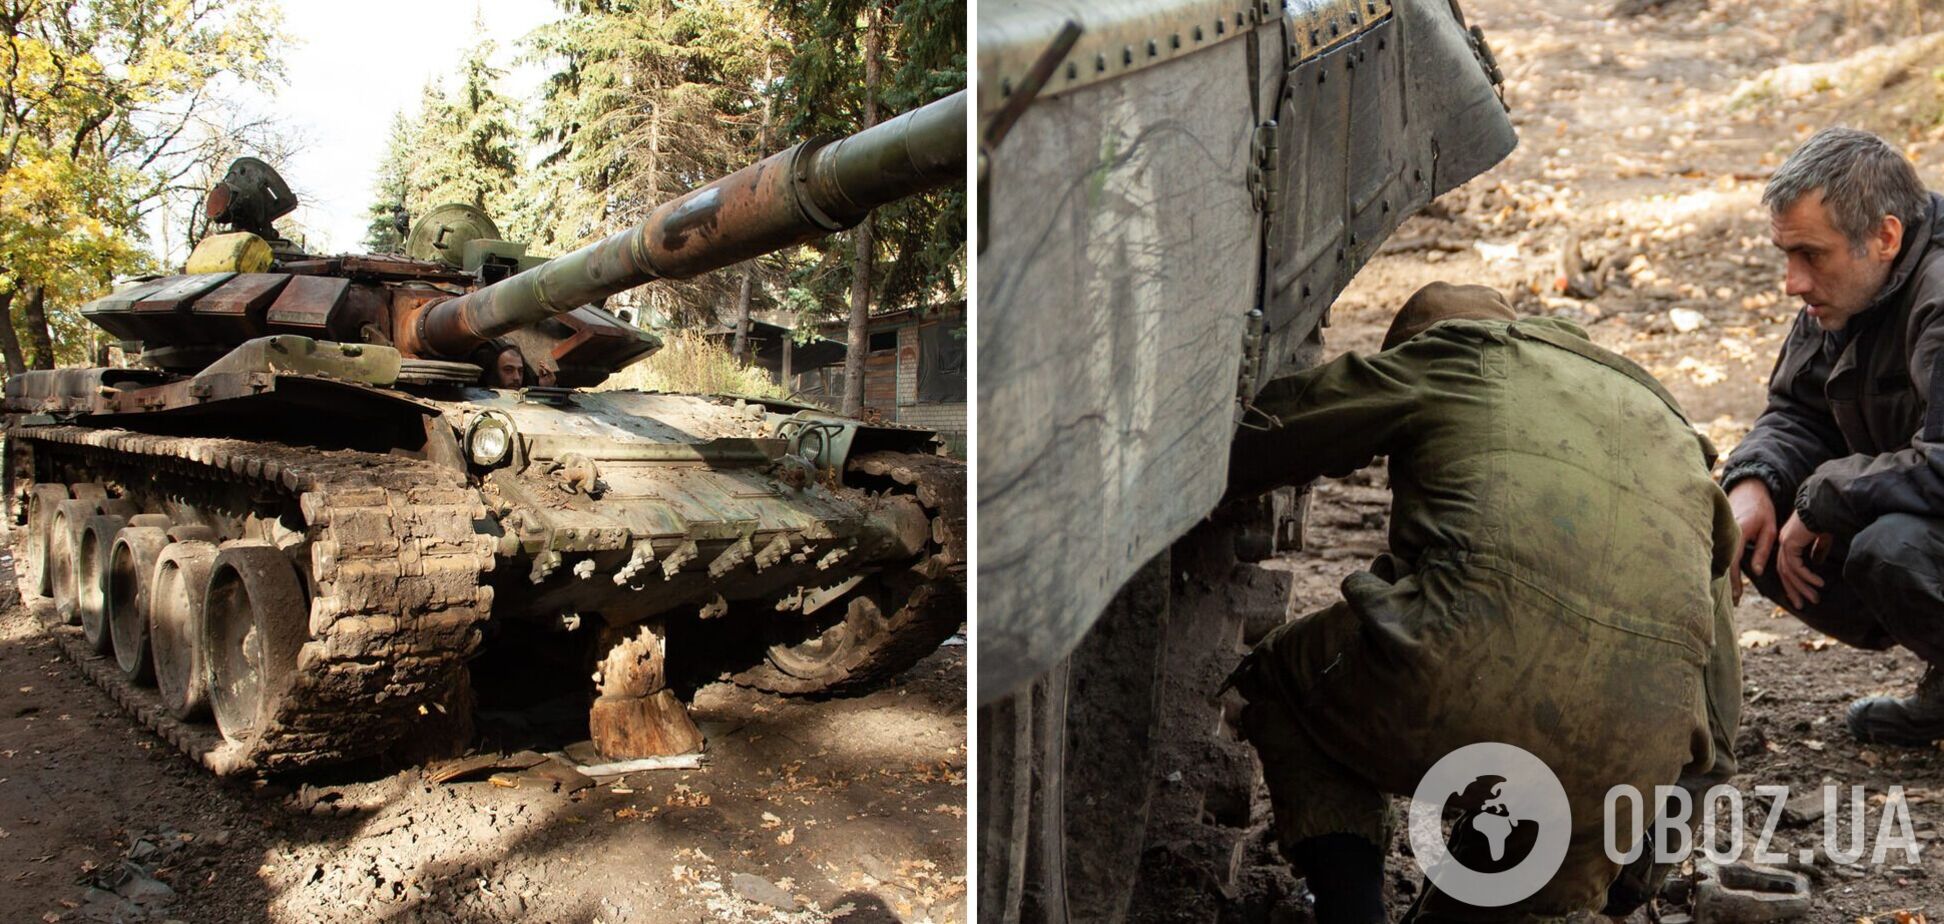 Российский ленд-лиз в действии: украинские воины захватили танк Т-72Б3, который бросили оккупанты. Фото трофея